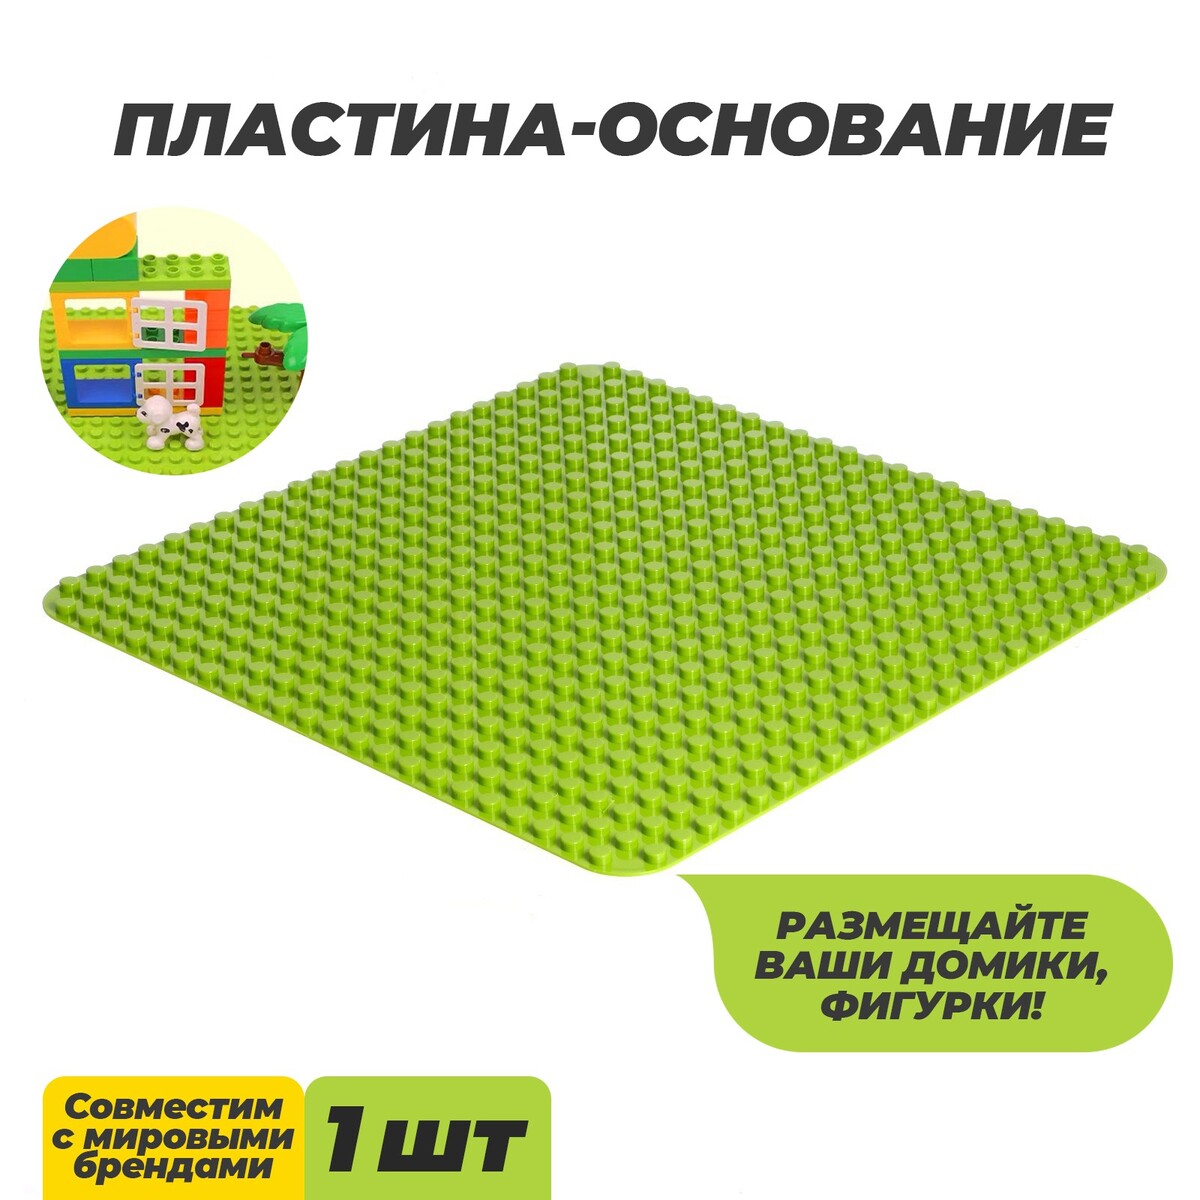 Пластина-основание для конструктора, 38,4 × 38,4 см, цвет салатовый пластина основание для конструктора 25 5 × 25 5 см салатовый